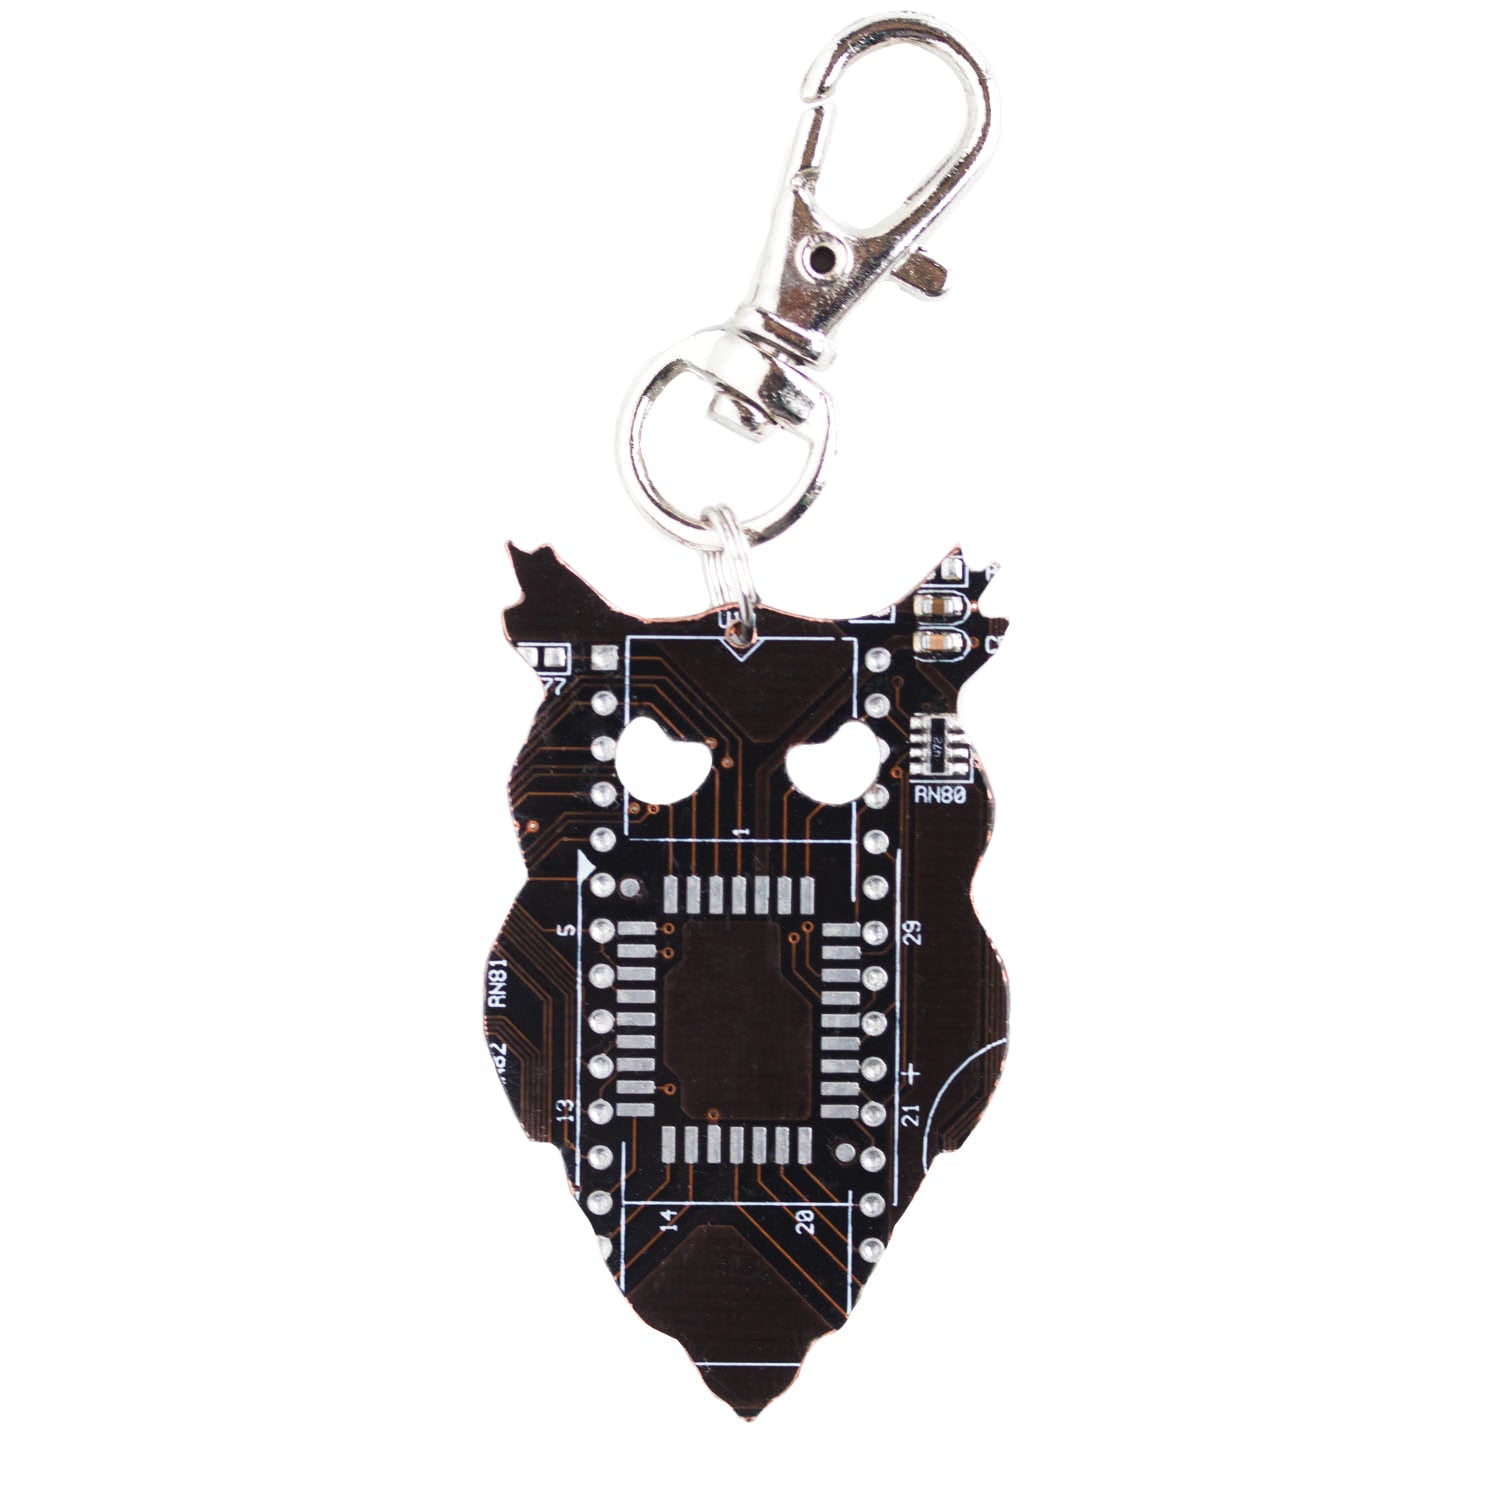 Black Owl Keychain